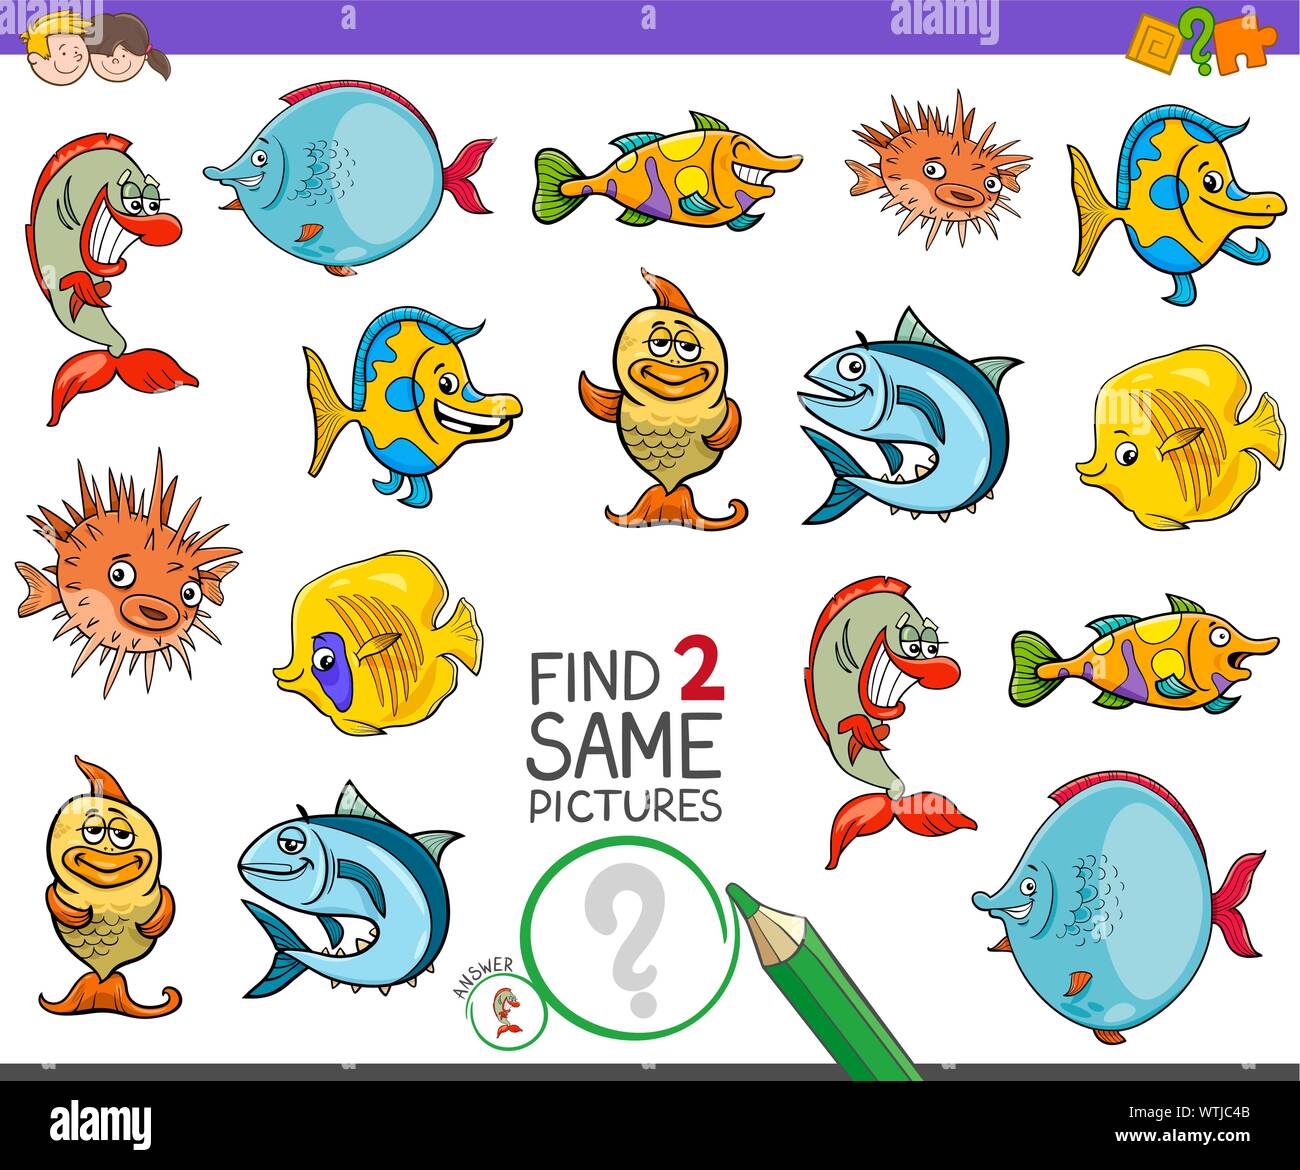 Cartoon Illustration de trouver deux mêmes images Jeu d'activités éducatives pour les enfants ayant des caractères des animaux poissons drôles Illustration de Vecteur